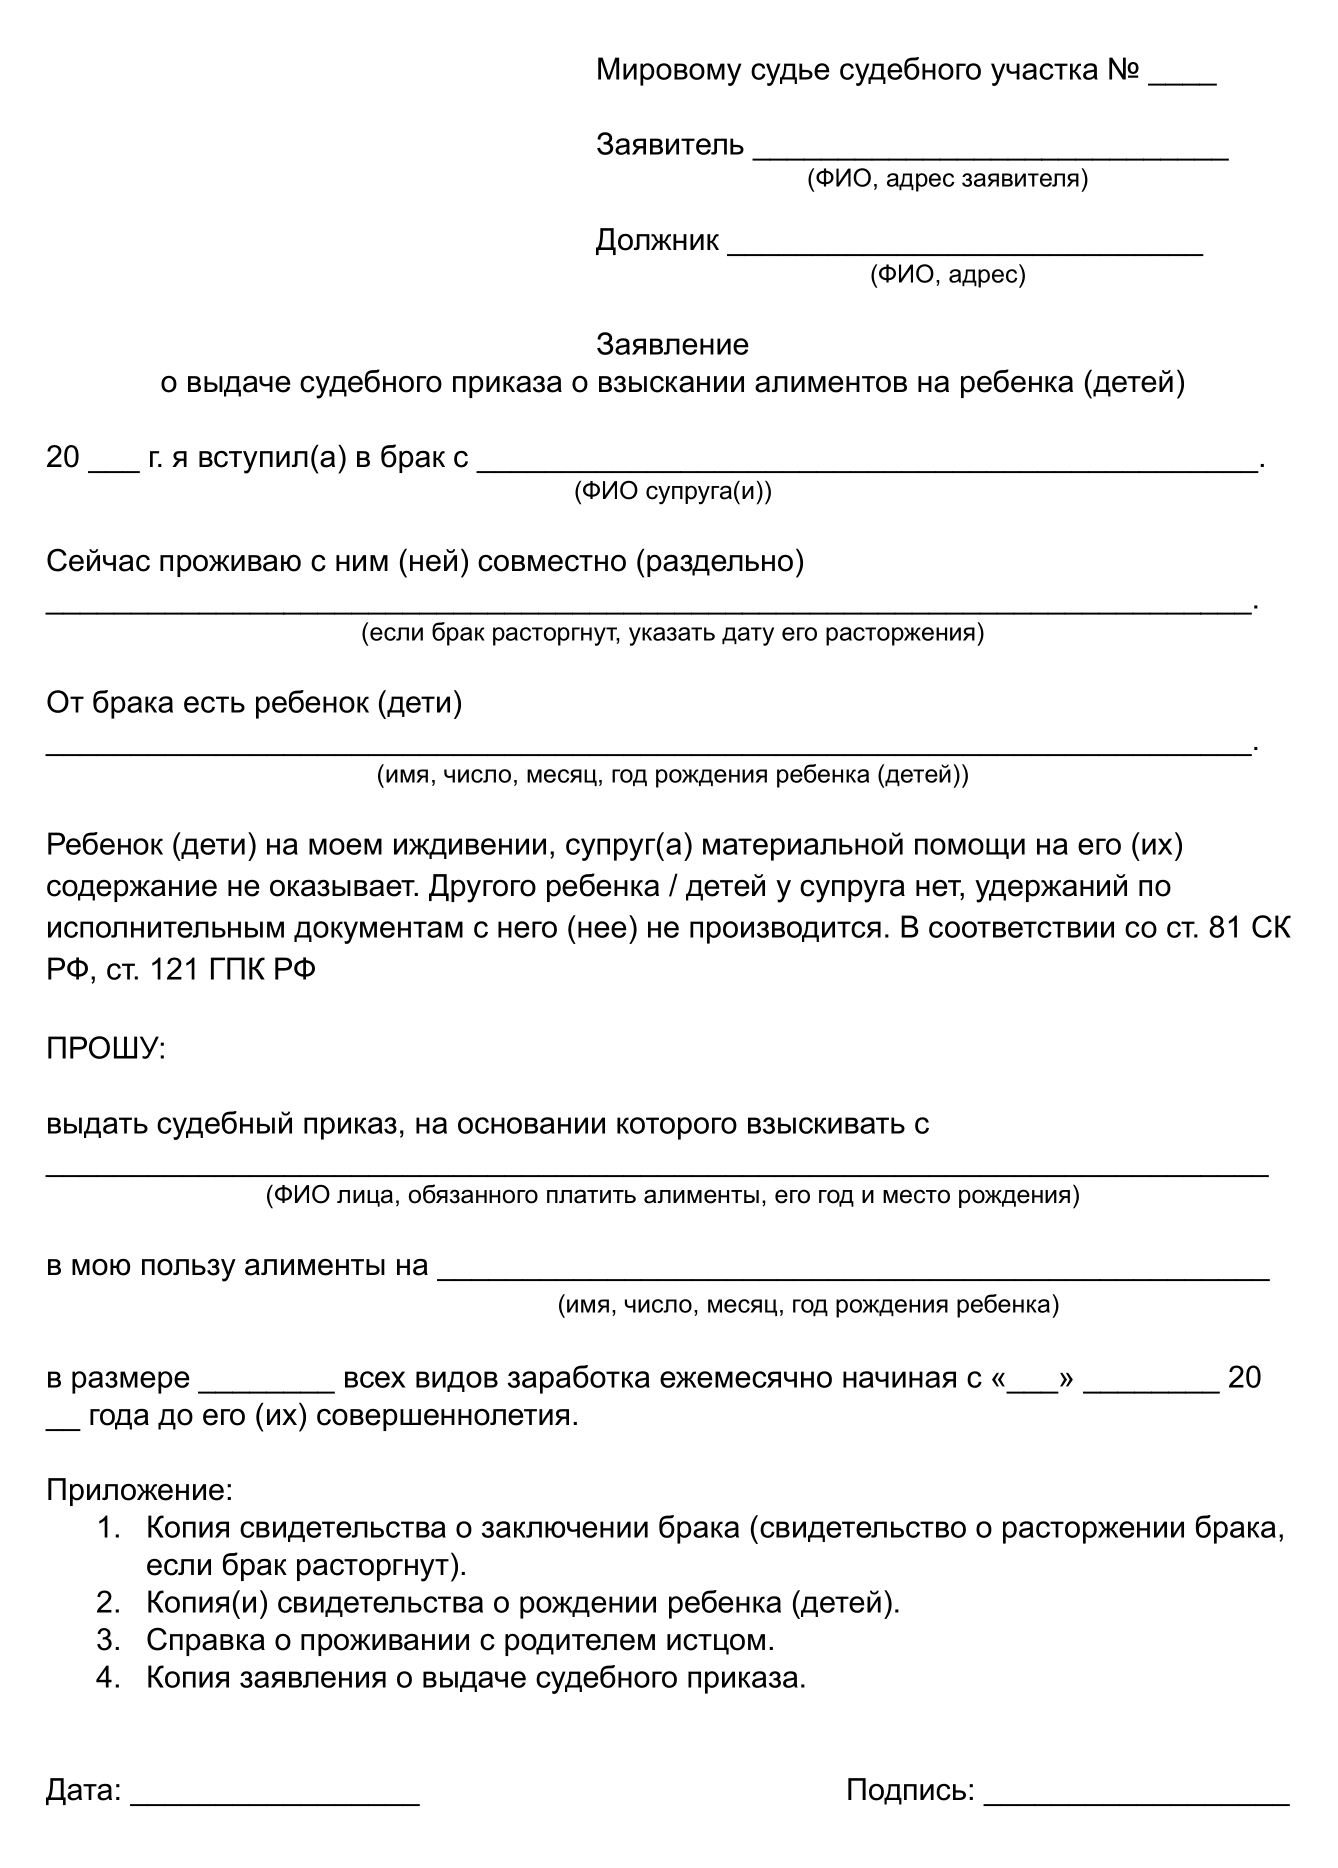 Как прекратить выплату алиментов законным путем в России: подробный гид